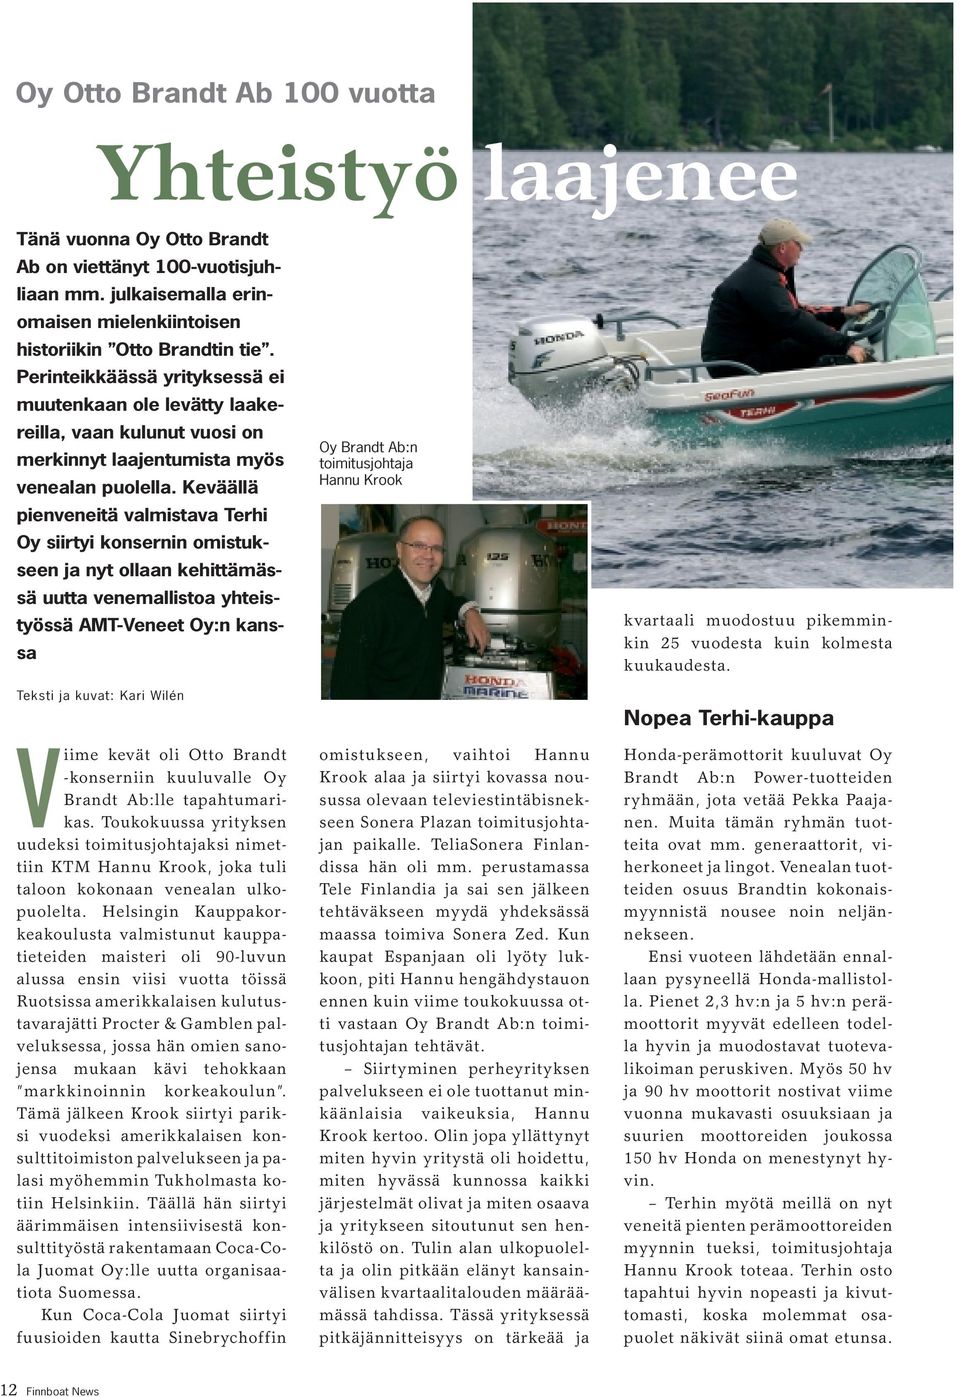 Keväällä pienveneitä valmistava Terhi Oy siirtyi konsernin omistukseen ja nyt ollaan kehittämässä uutta venemallistoa yhteistyössä AMT-Veneet Oy:n kanssa Teksti ja kuvat: Kari Wilén Viime kevät oli